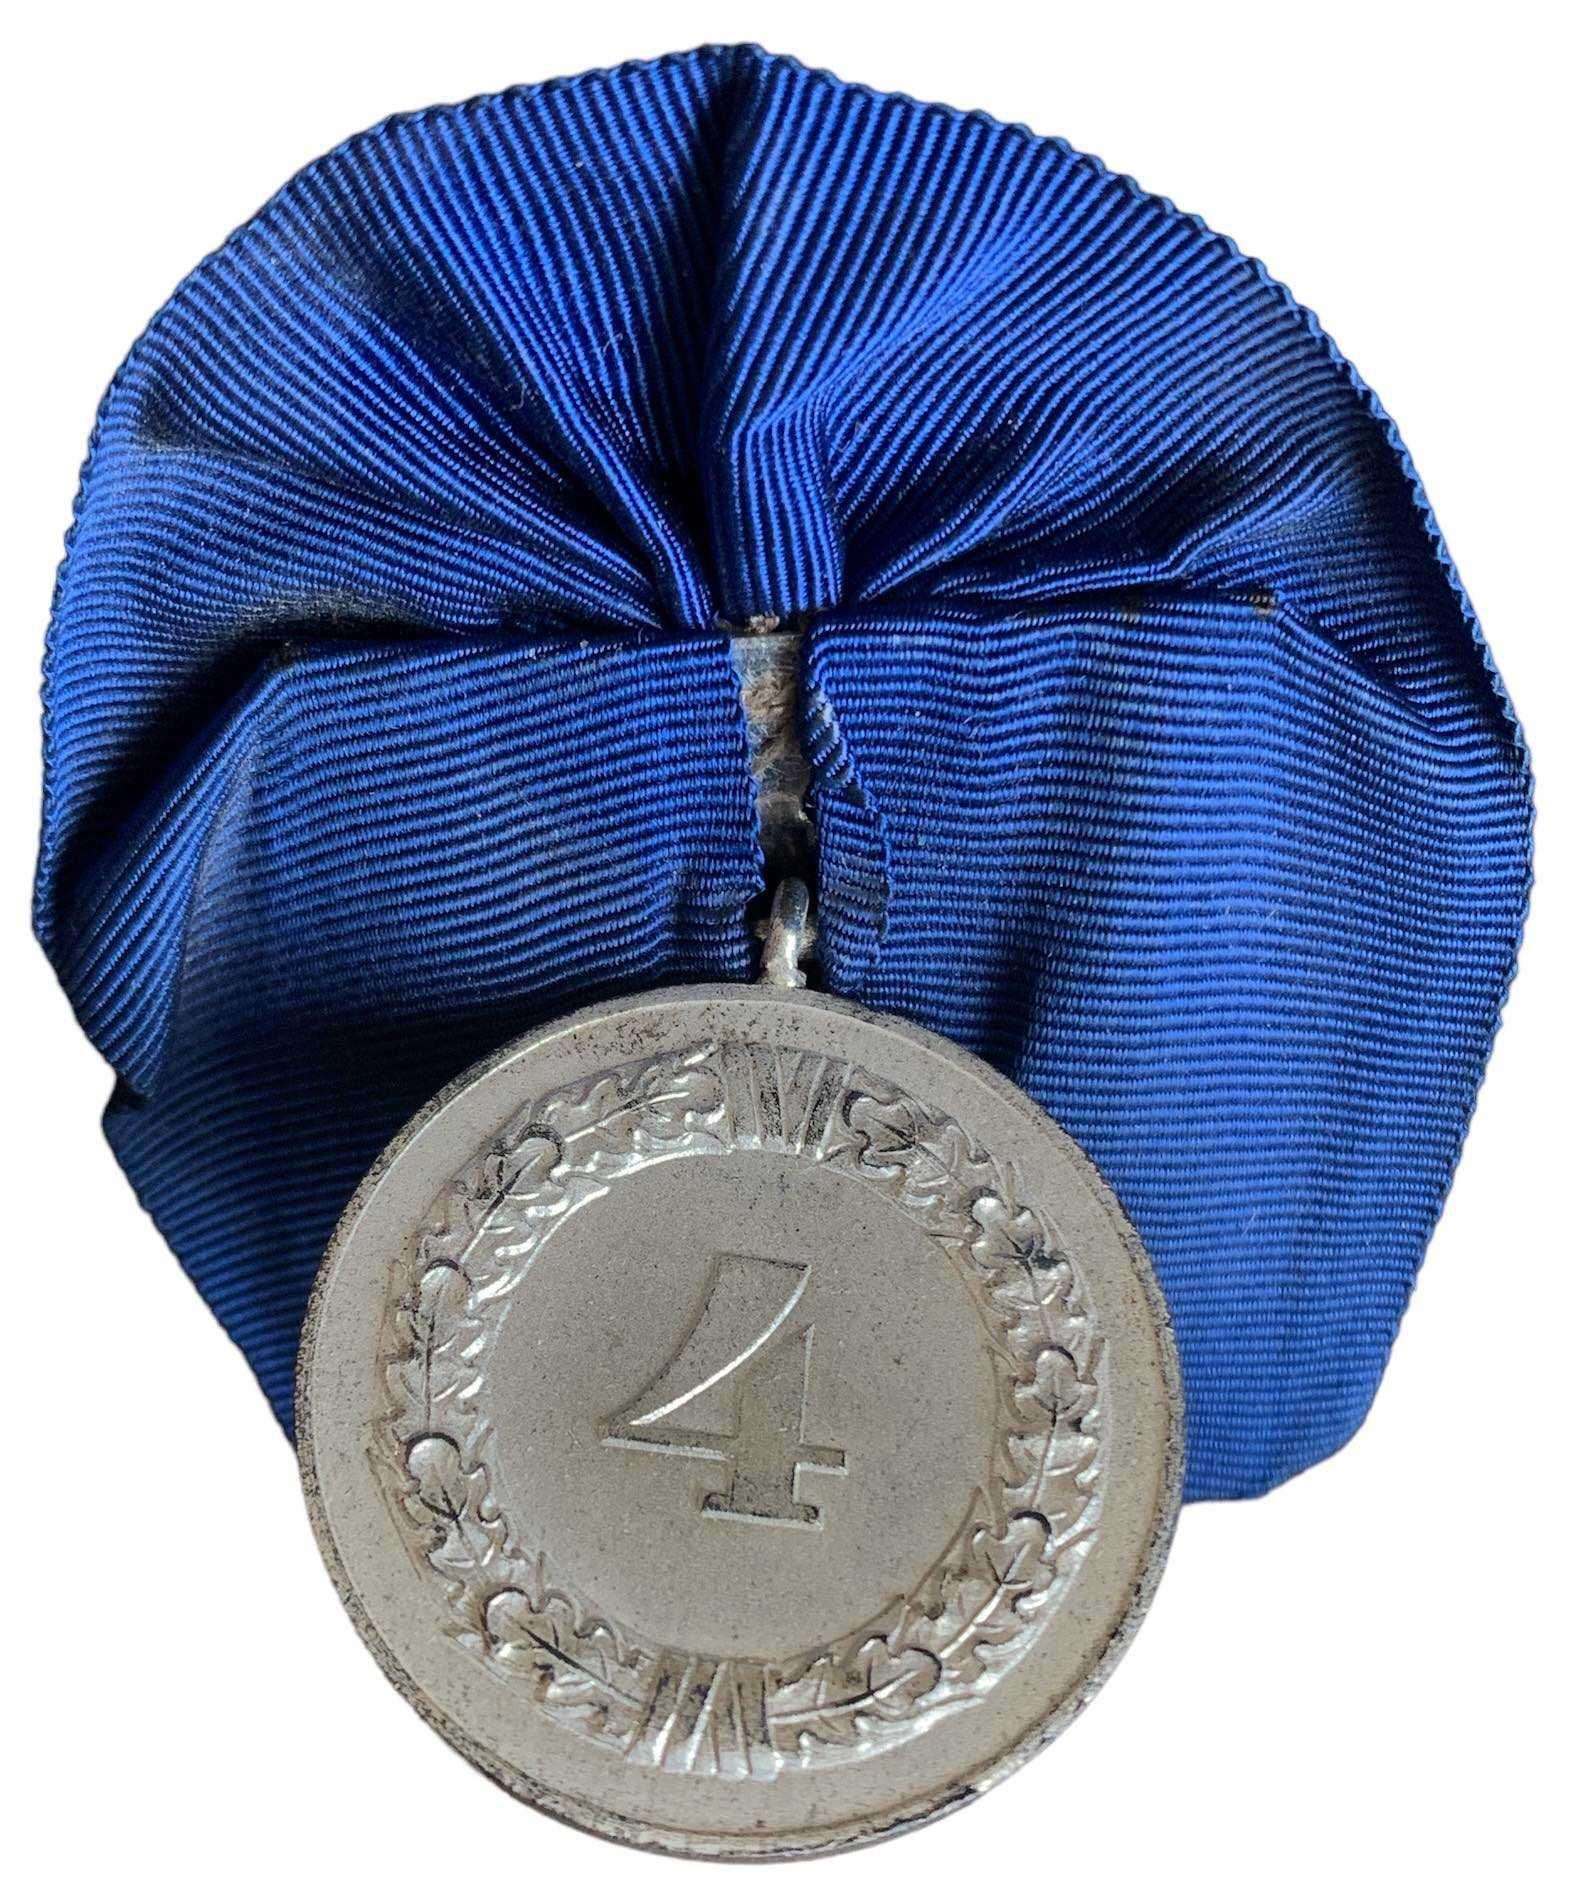 III Rzesza: Szpanga Medal za 4 lata służby w WH